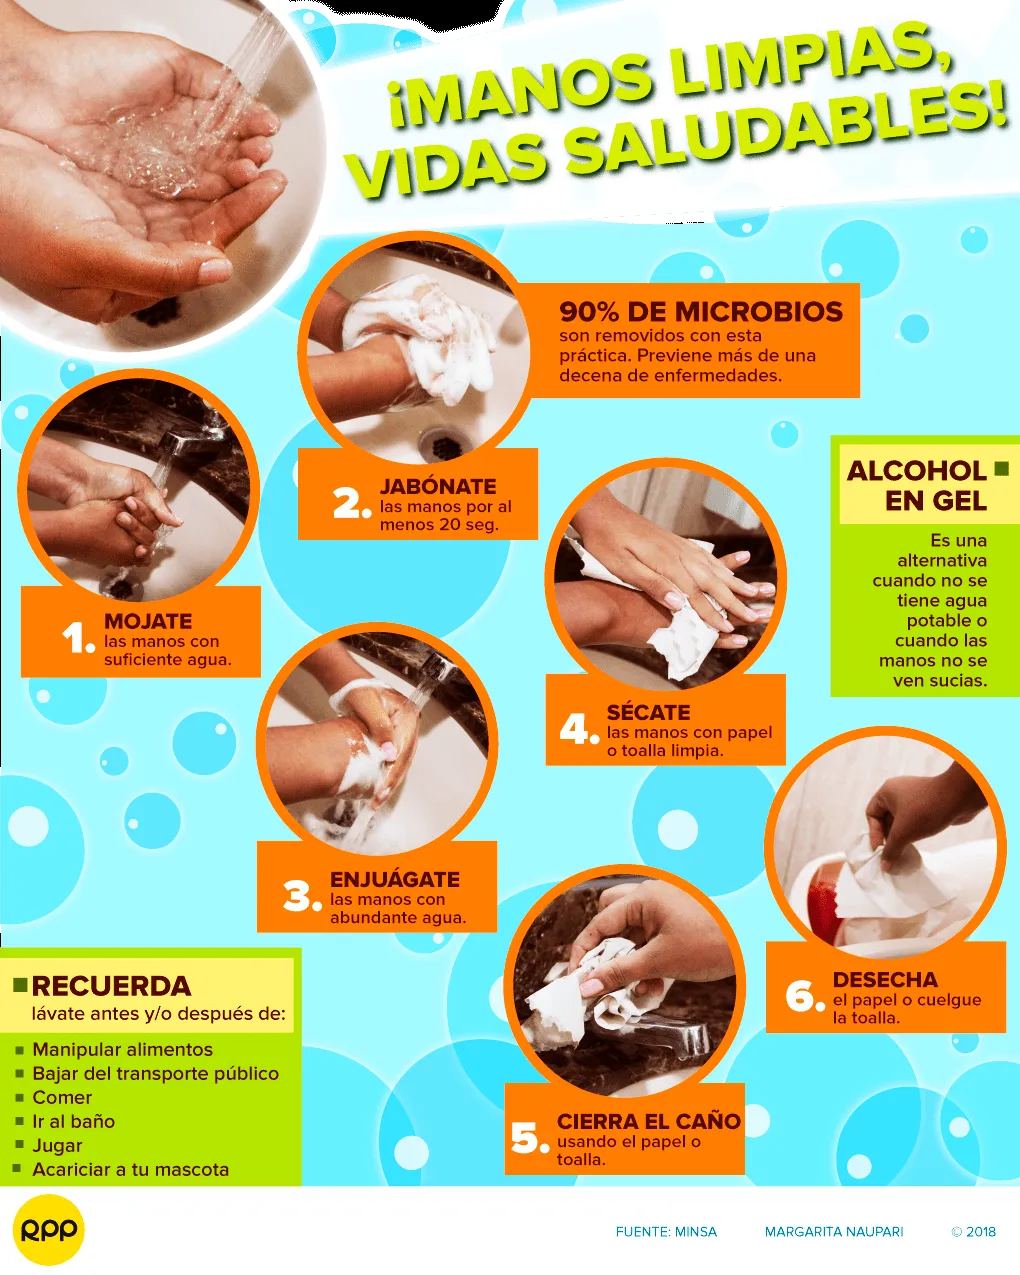 Coronavirus | El lavado de manos: Una práctica fácil y económica que salva  vidas | COVID-19 | RPP Noticias